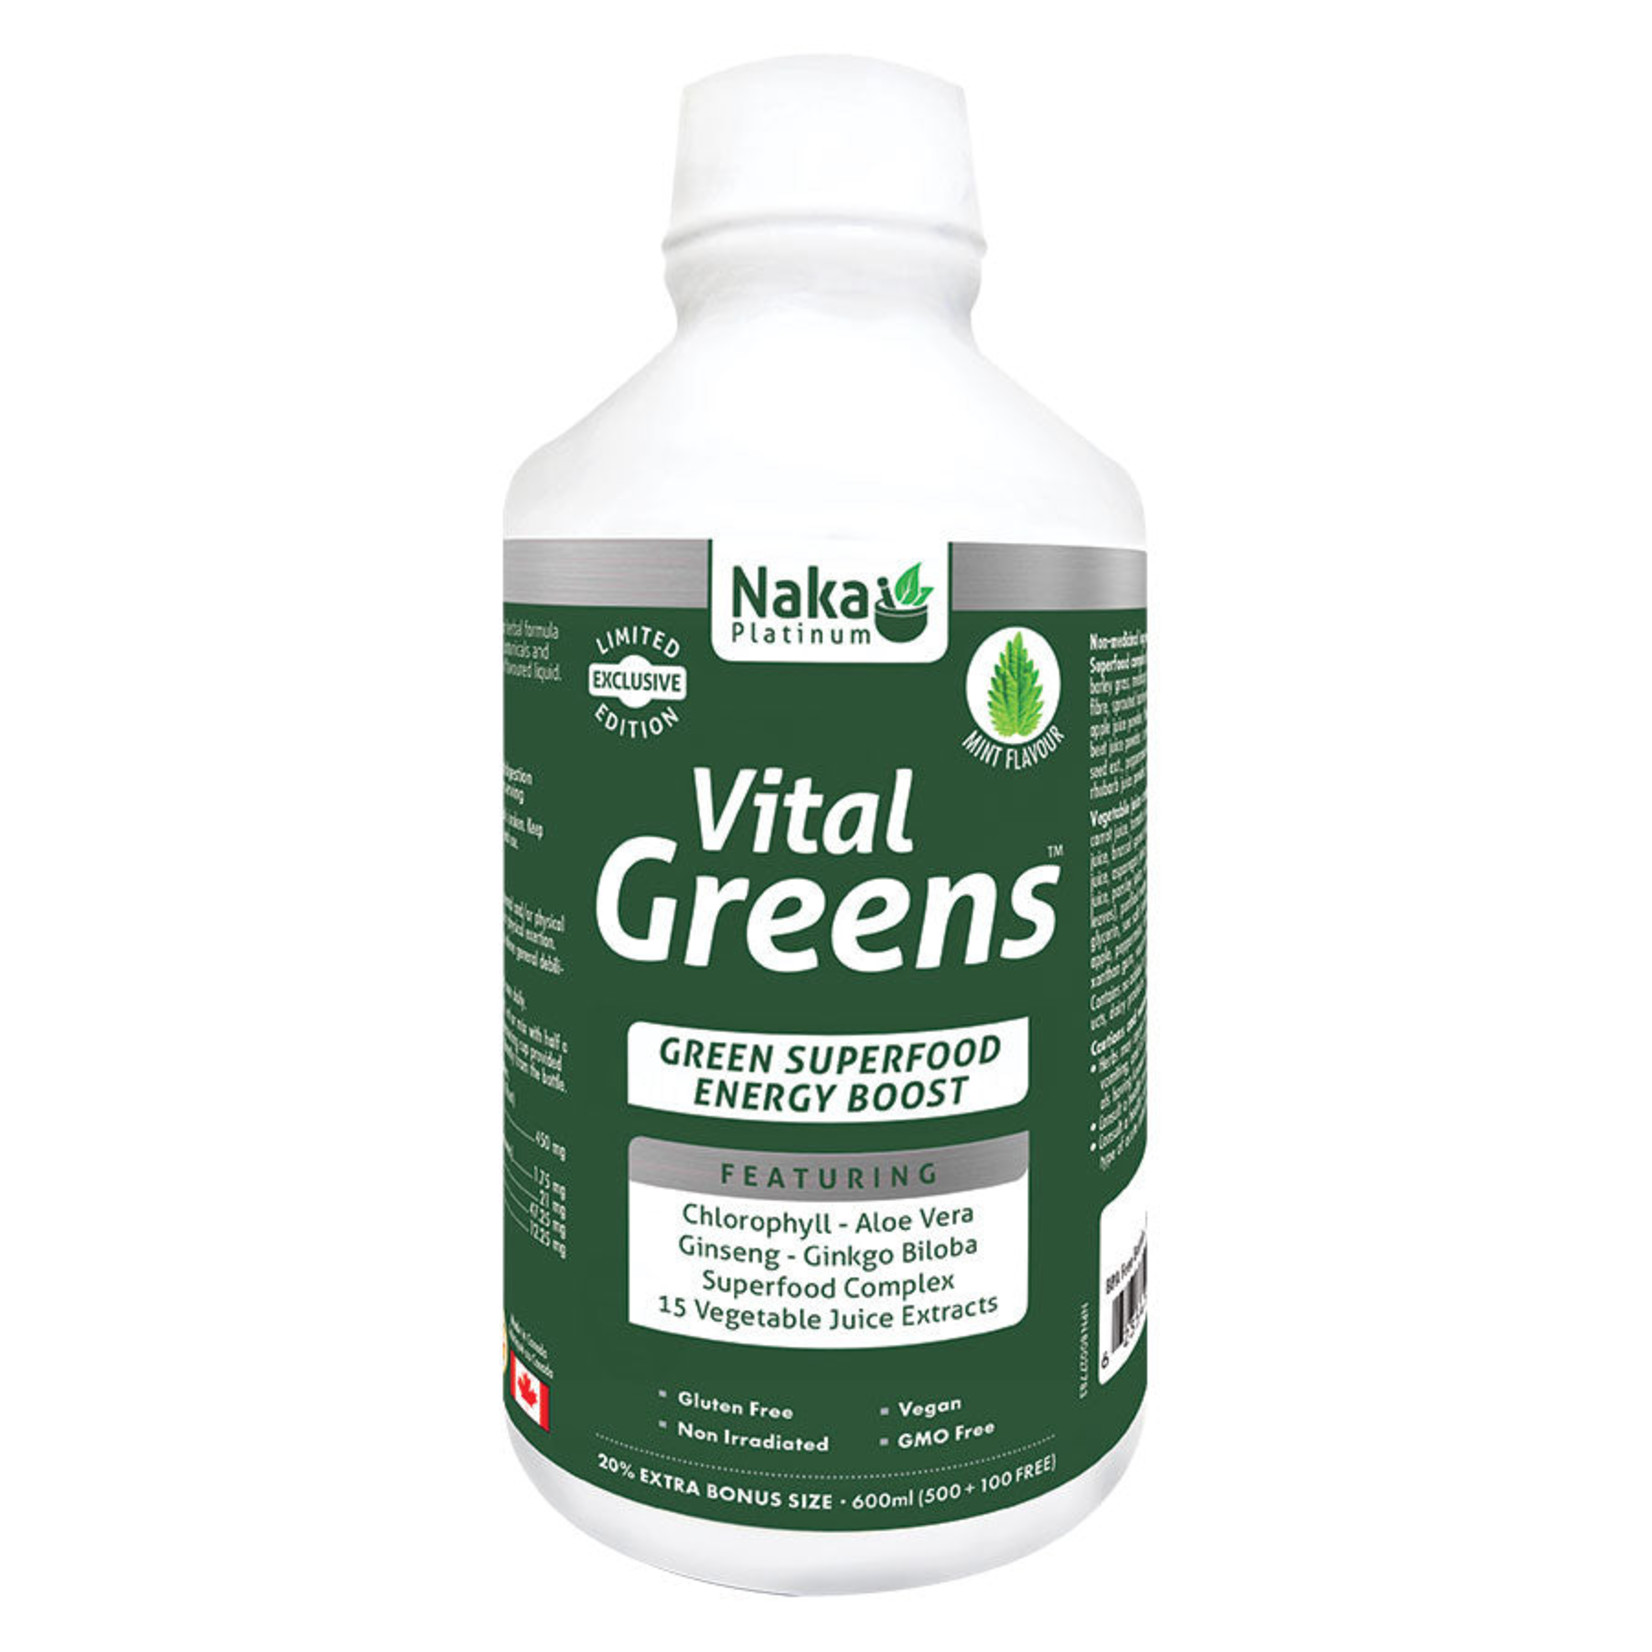 Naka Original Naka - Vital Greens (600ml) Limited Edition